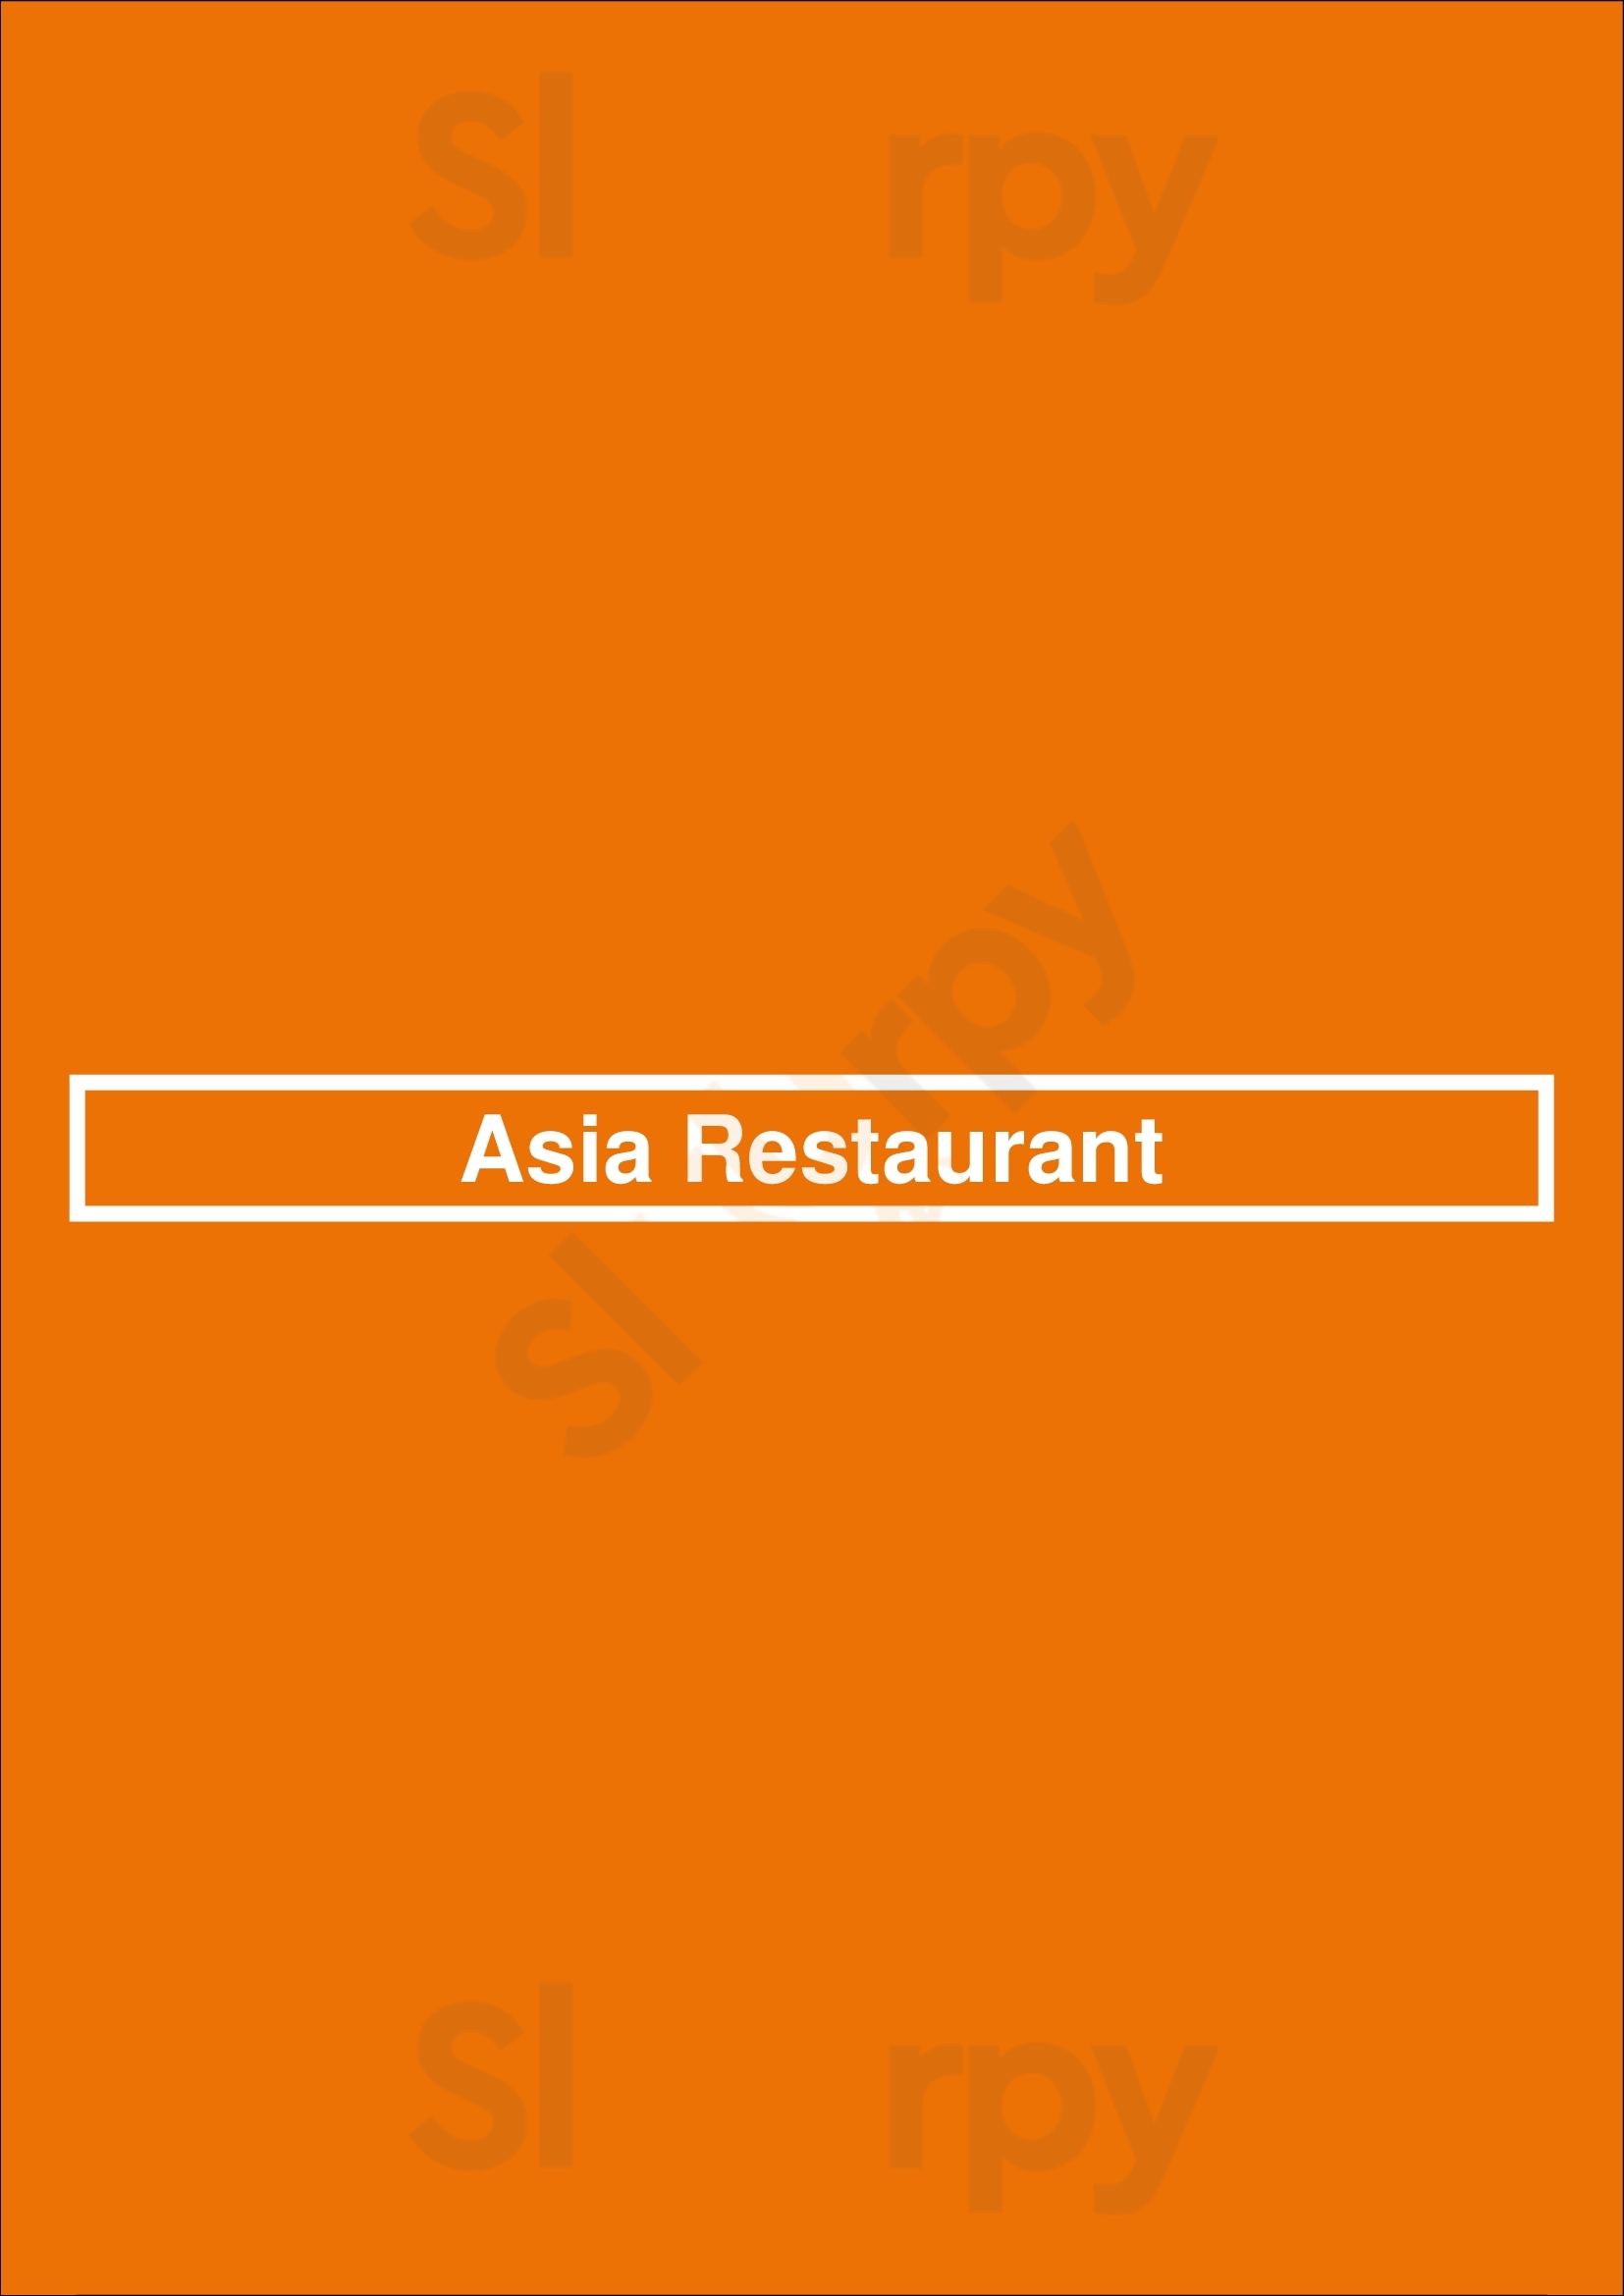 Asia Restaurant San Antonio Menu - 1